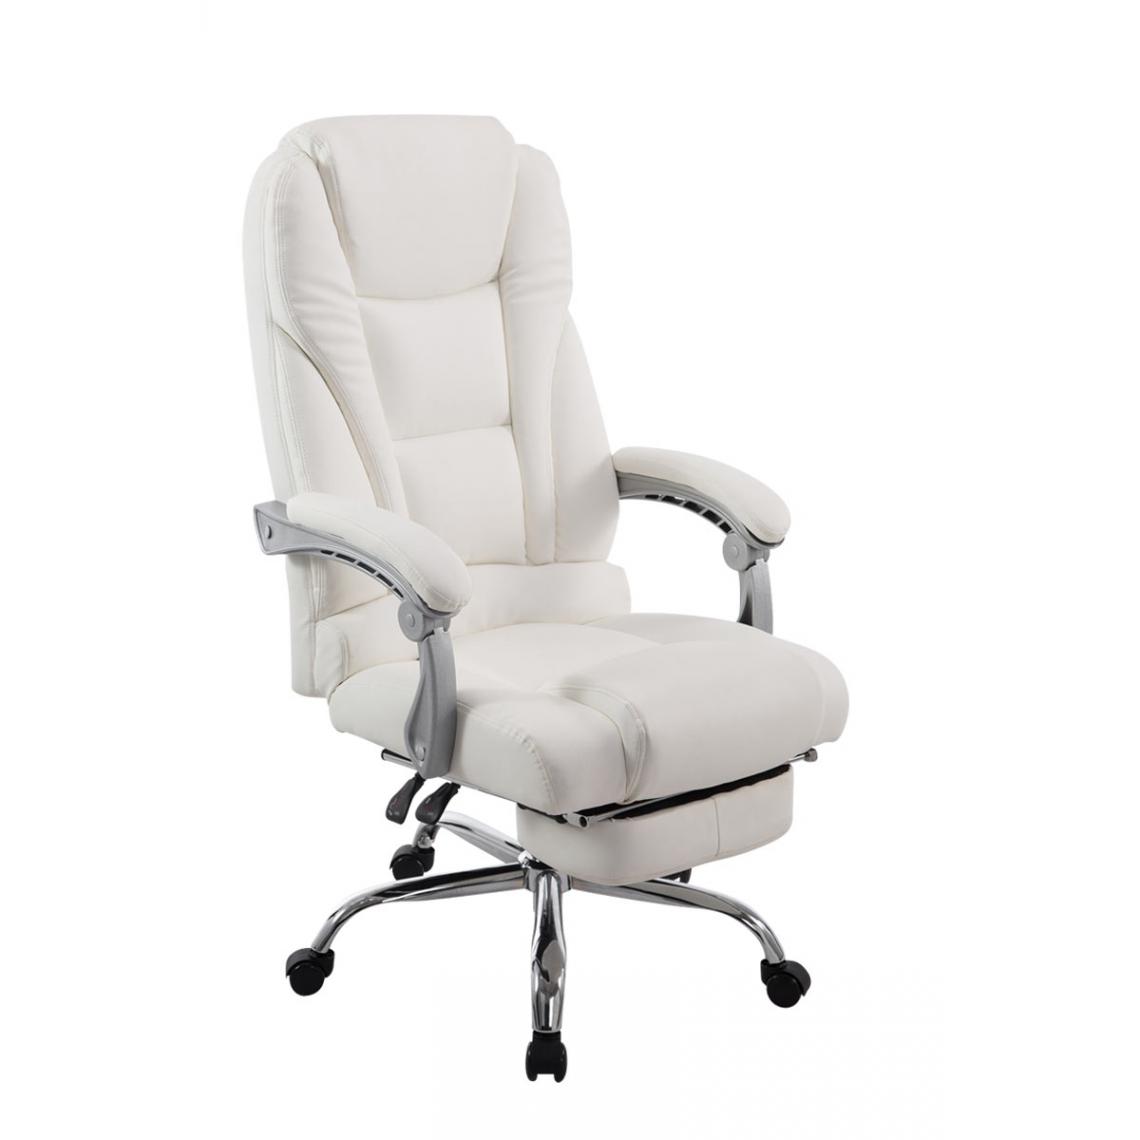 Icaverne - sublime Chaise de bureau categorie Quito couleur blanc - Chaises